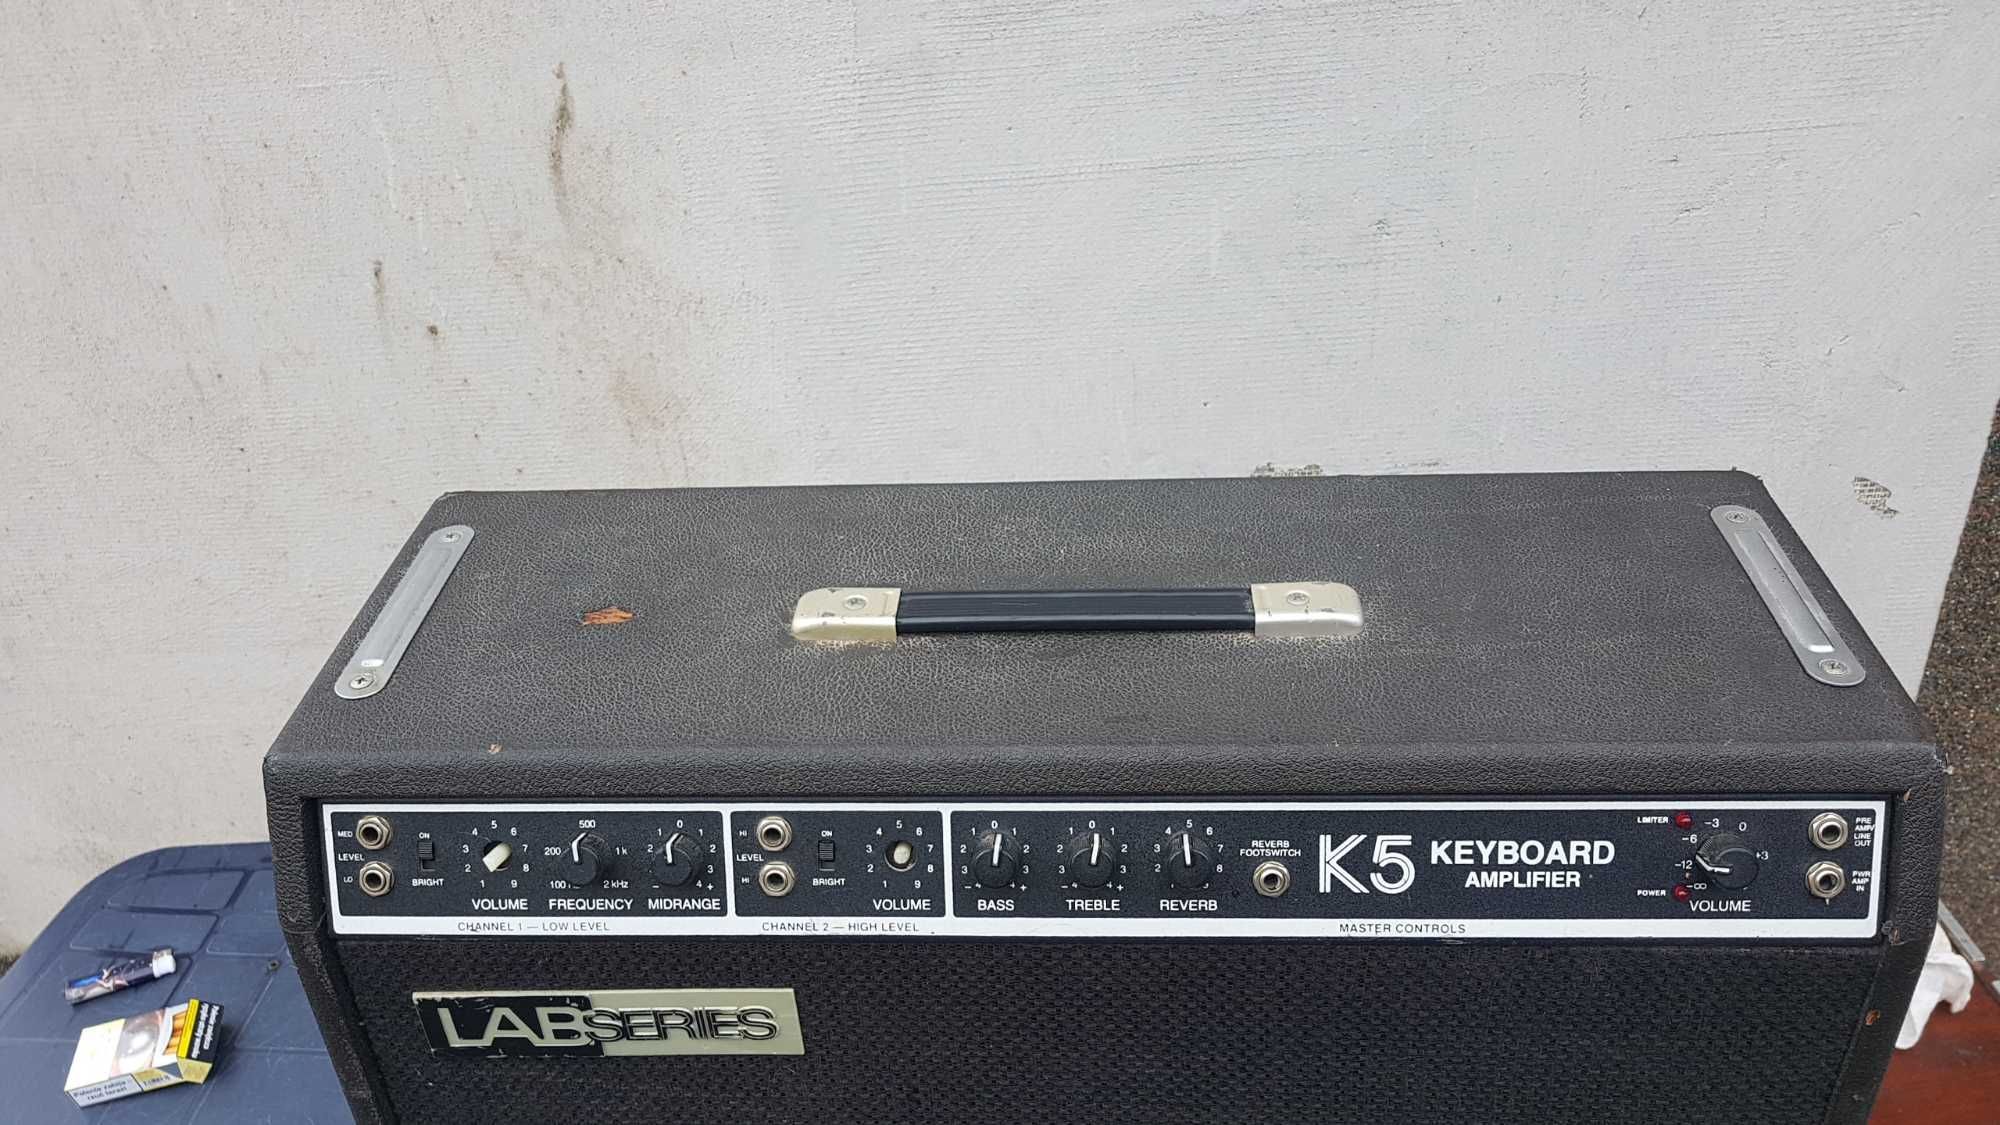 Lab series k5 keyboard amp. combo gitara